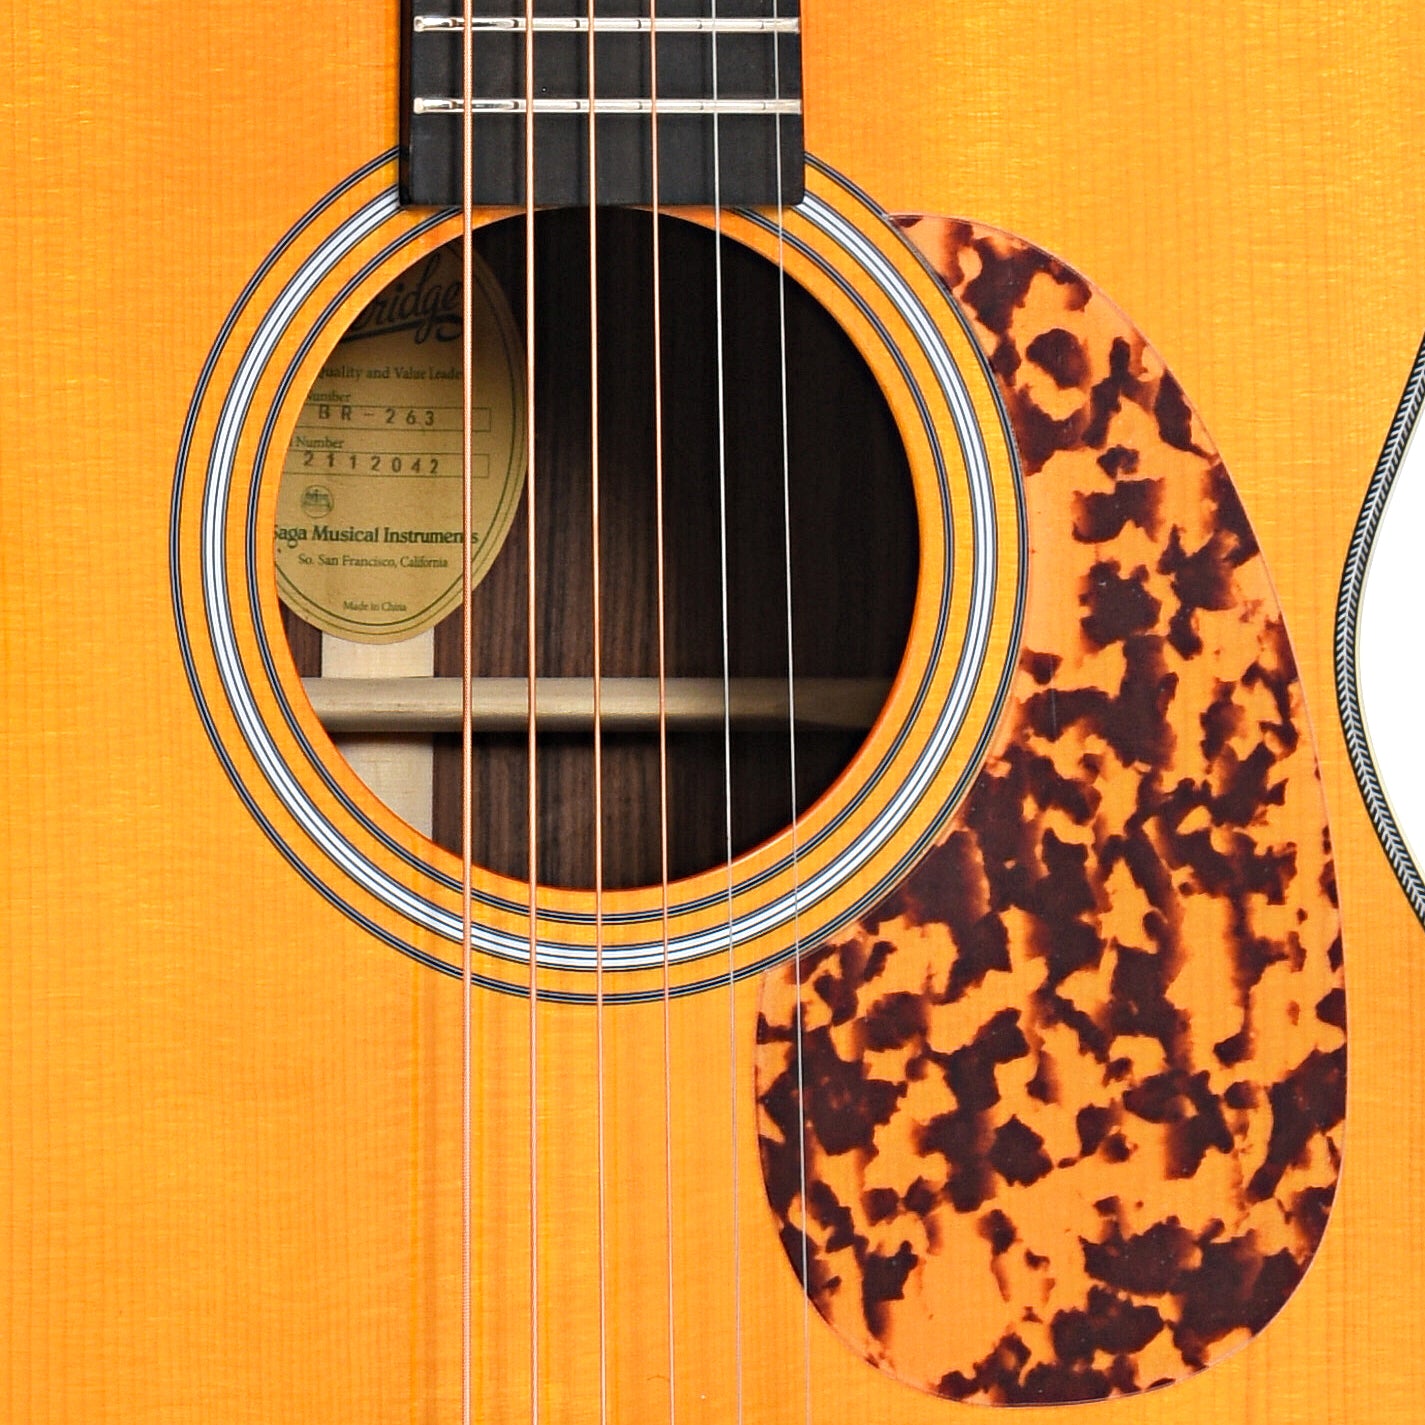 Soundhole and pickguard of Blueridge Prewar Series BR-263 000 Acoustic Guitar